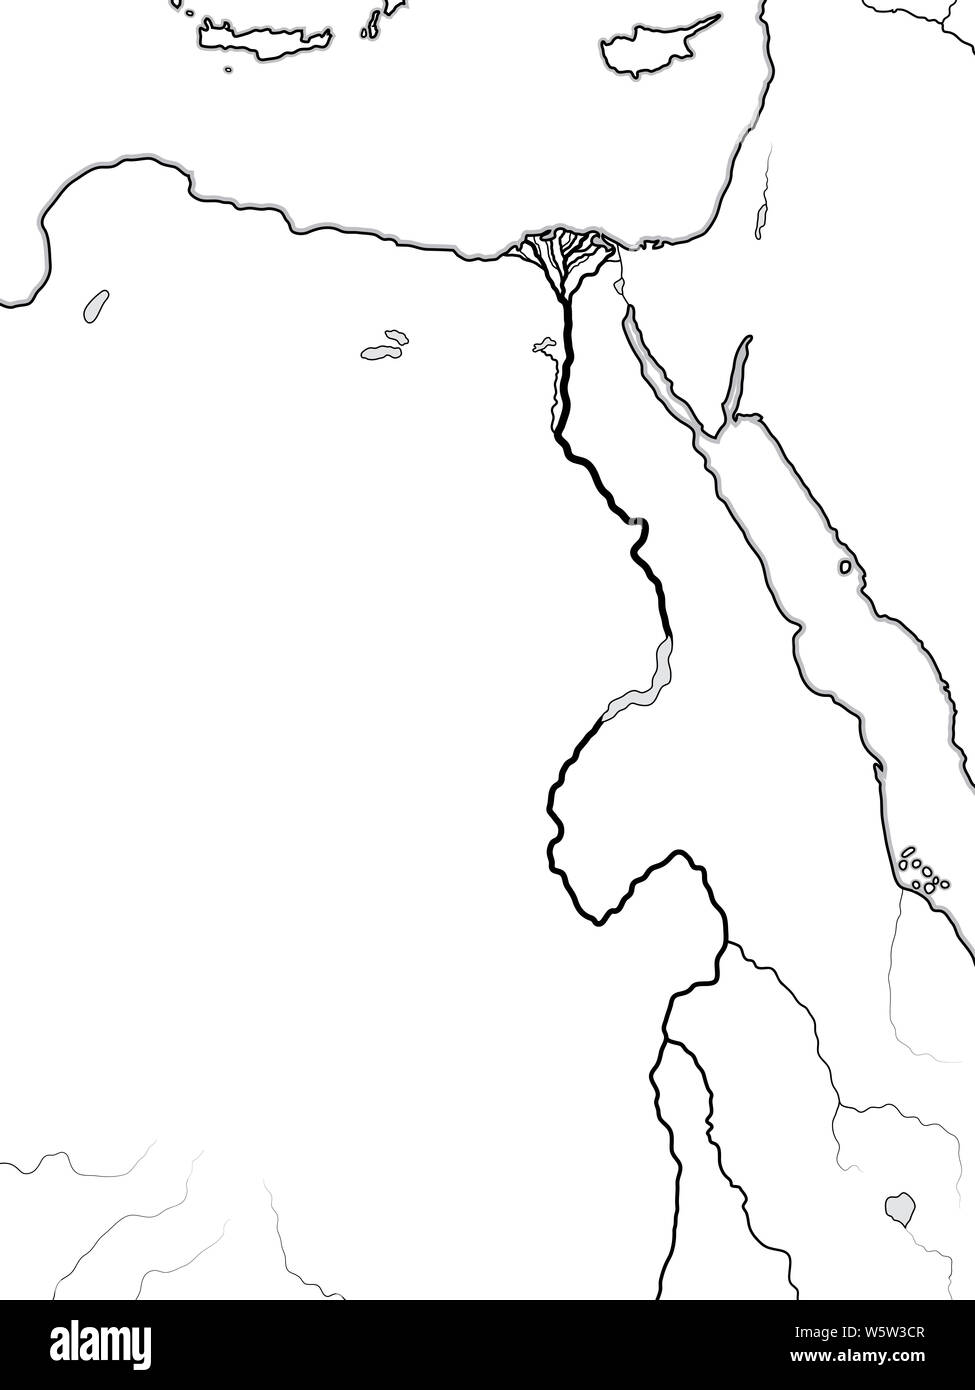 Carte du monde de l'Égypte, la Nubie, la Libye : l'Afrique, l'ancienne Egypte, Libye, Nubia (Kush, Méroé, l'Éthiopie, d'Axoum, l'Abyssinie, Soudan), vallée du Nil et son delta. Banque D'Images